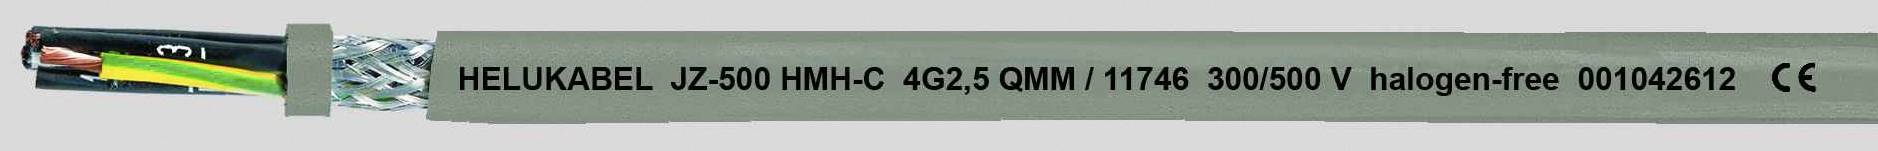 HELUKABEL JZ-500 HMH-C Steuerleitung 5 G 0.75 mm² Grau 11681-1000 1000 m